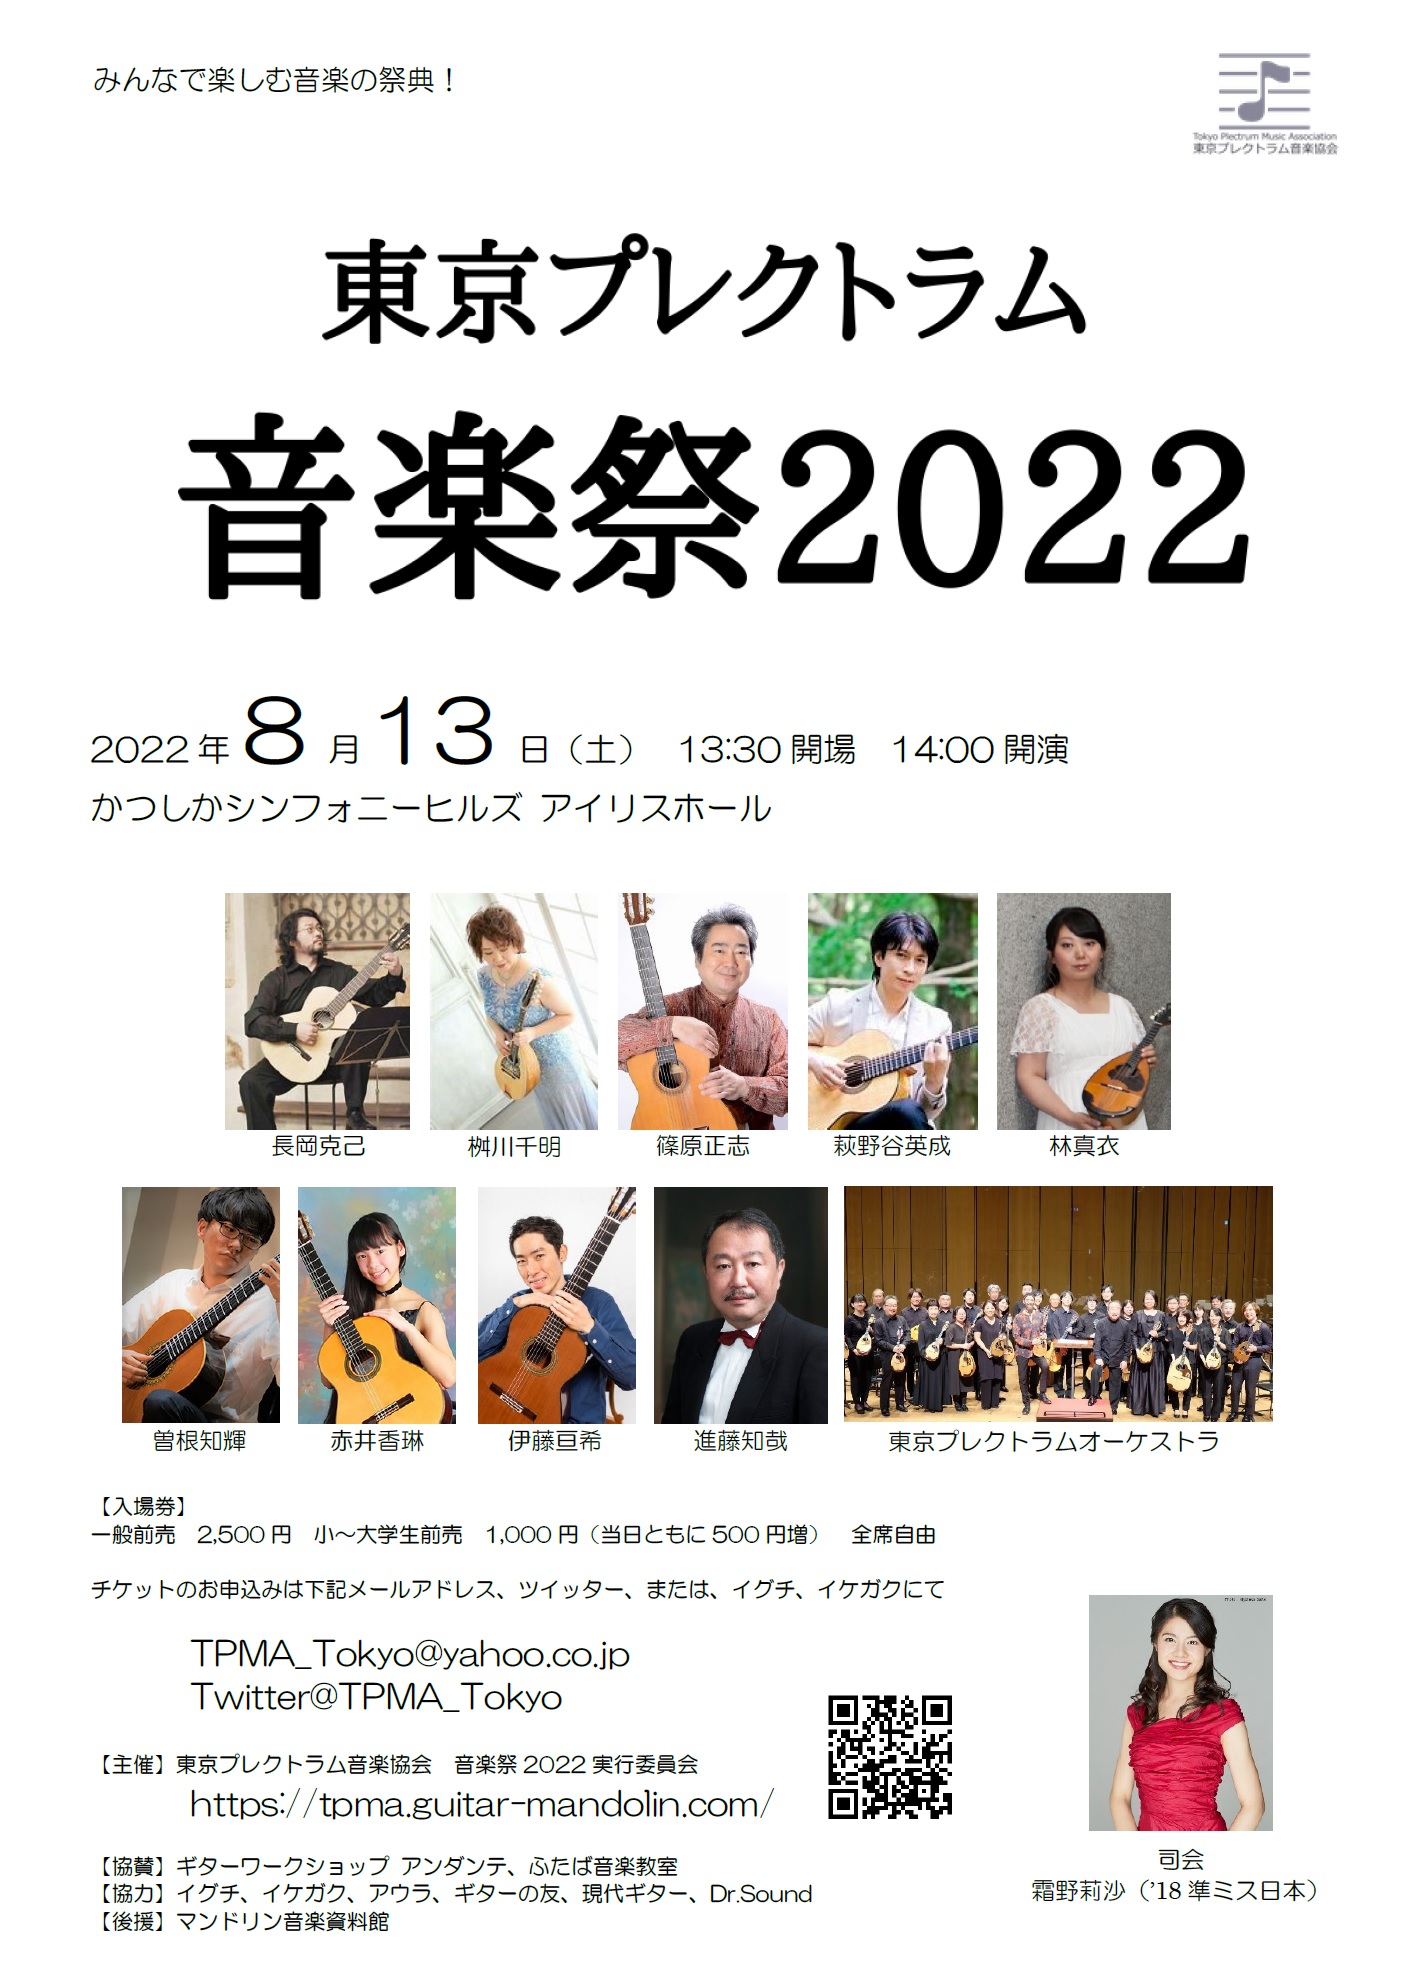 東京プレクトラム音楽祭2022 チラシ表面